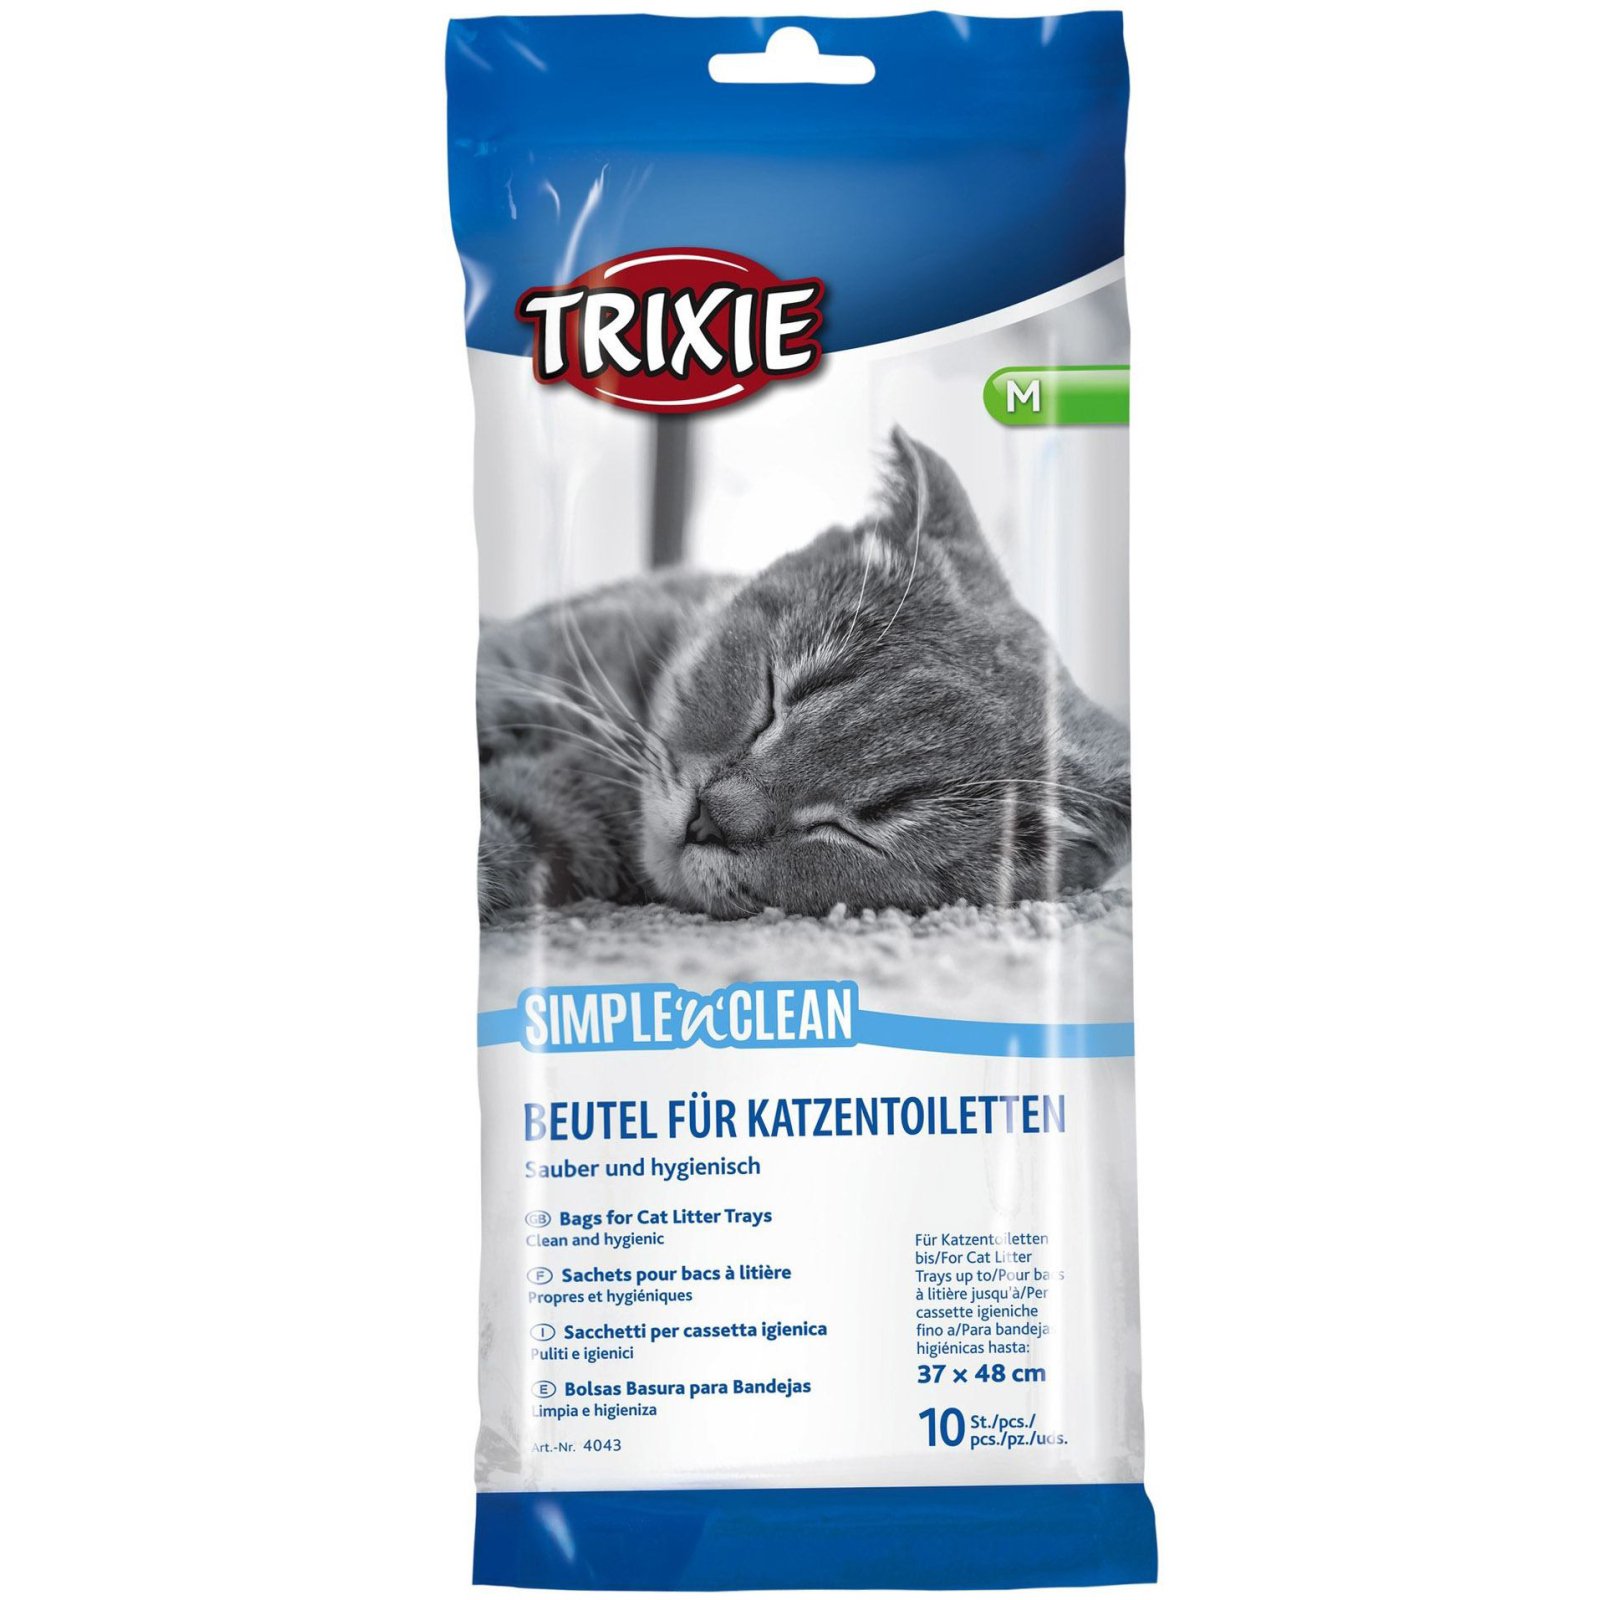 Пакеты для кошачьего туалета Trixie Simple'n'Clean 59х46 см 10 шт (4011905040448)